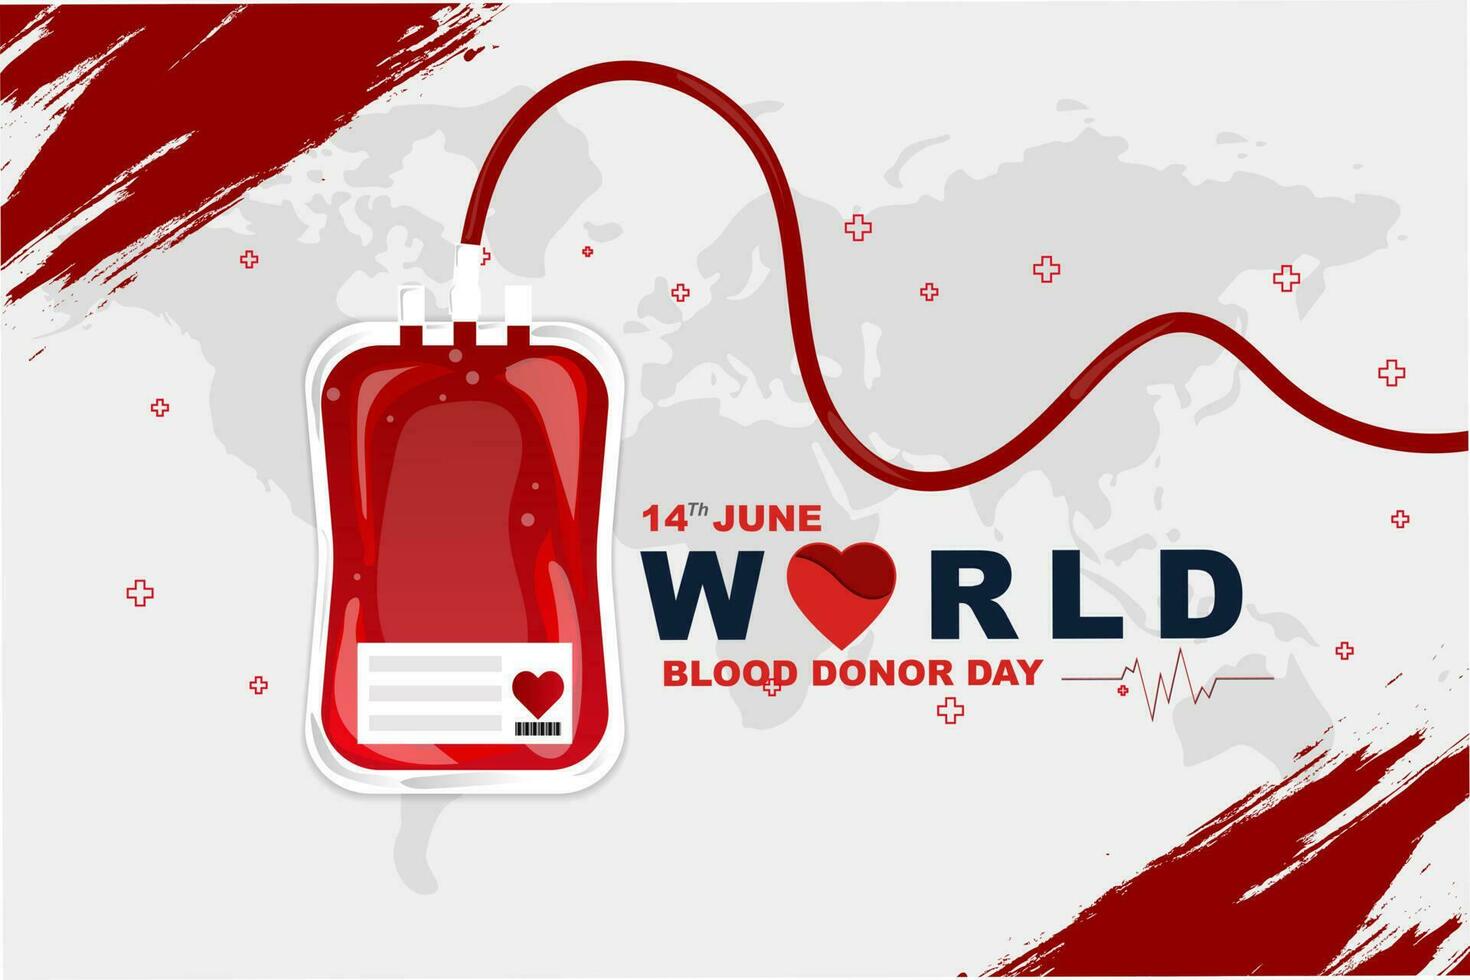 värld blod givare dag juni 14:e, hälsning kort eller affisch design, platt vektor illustration